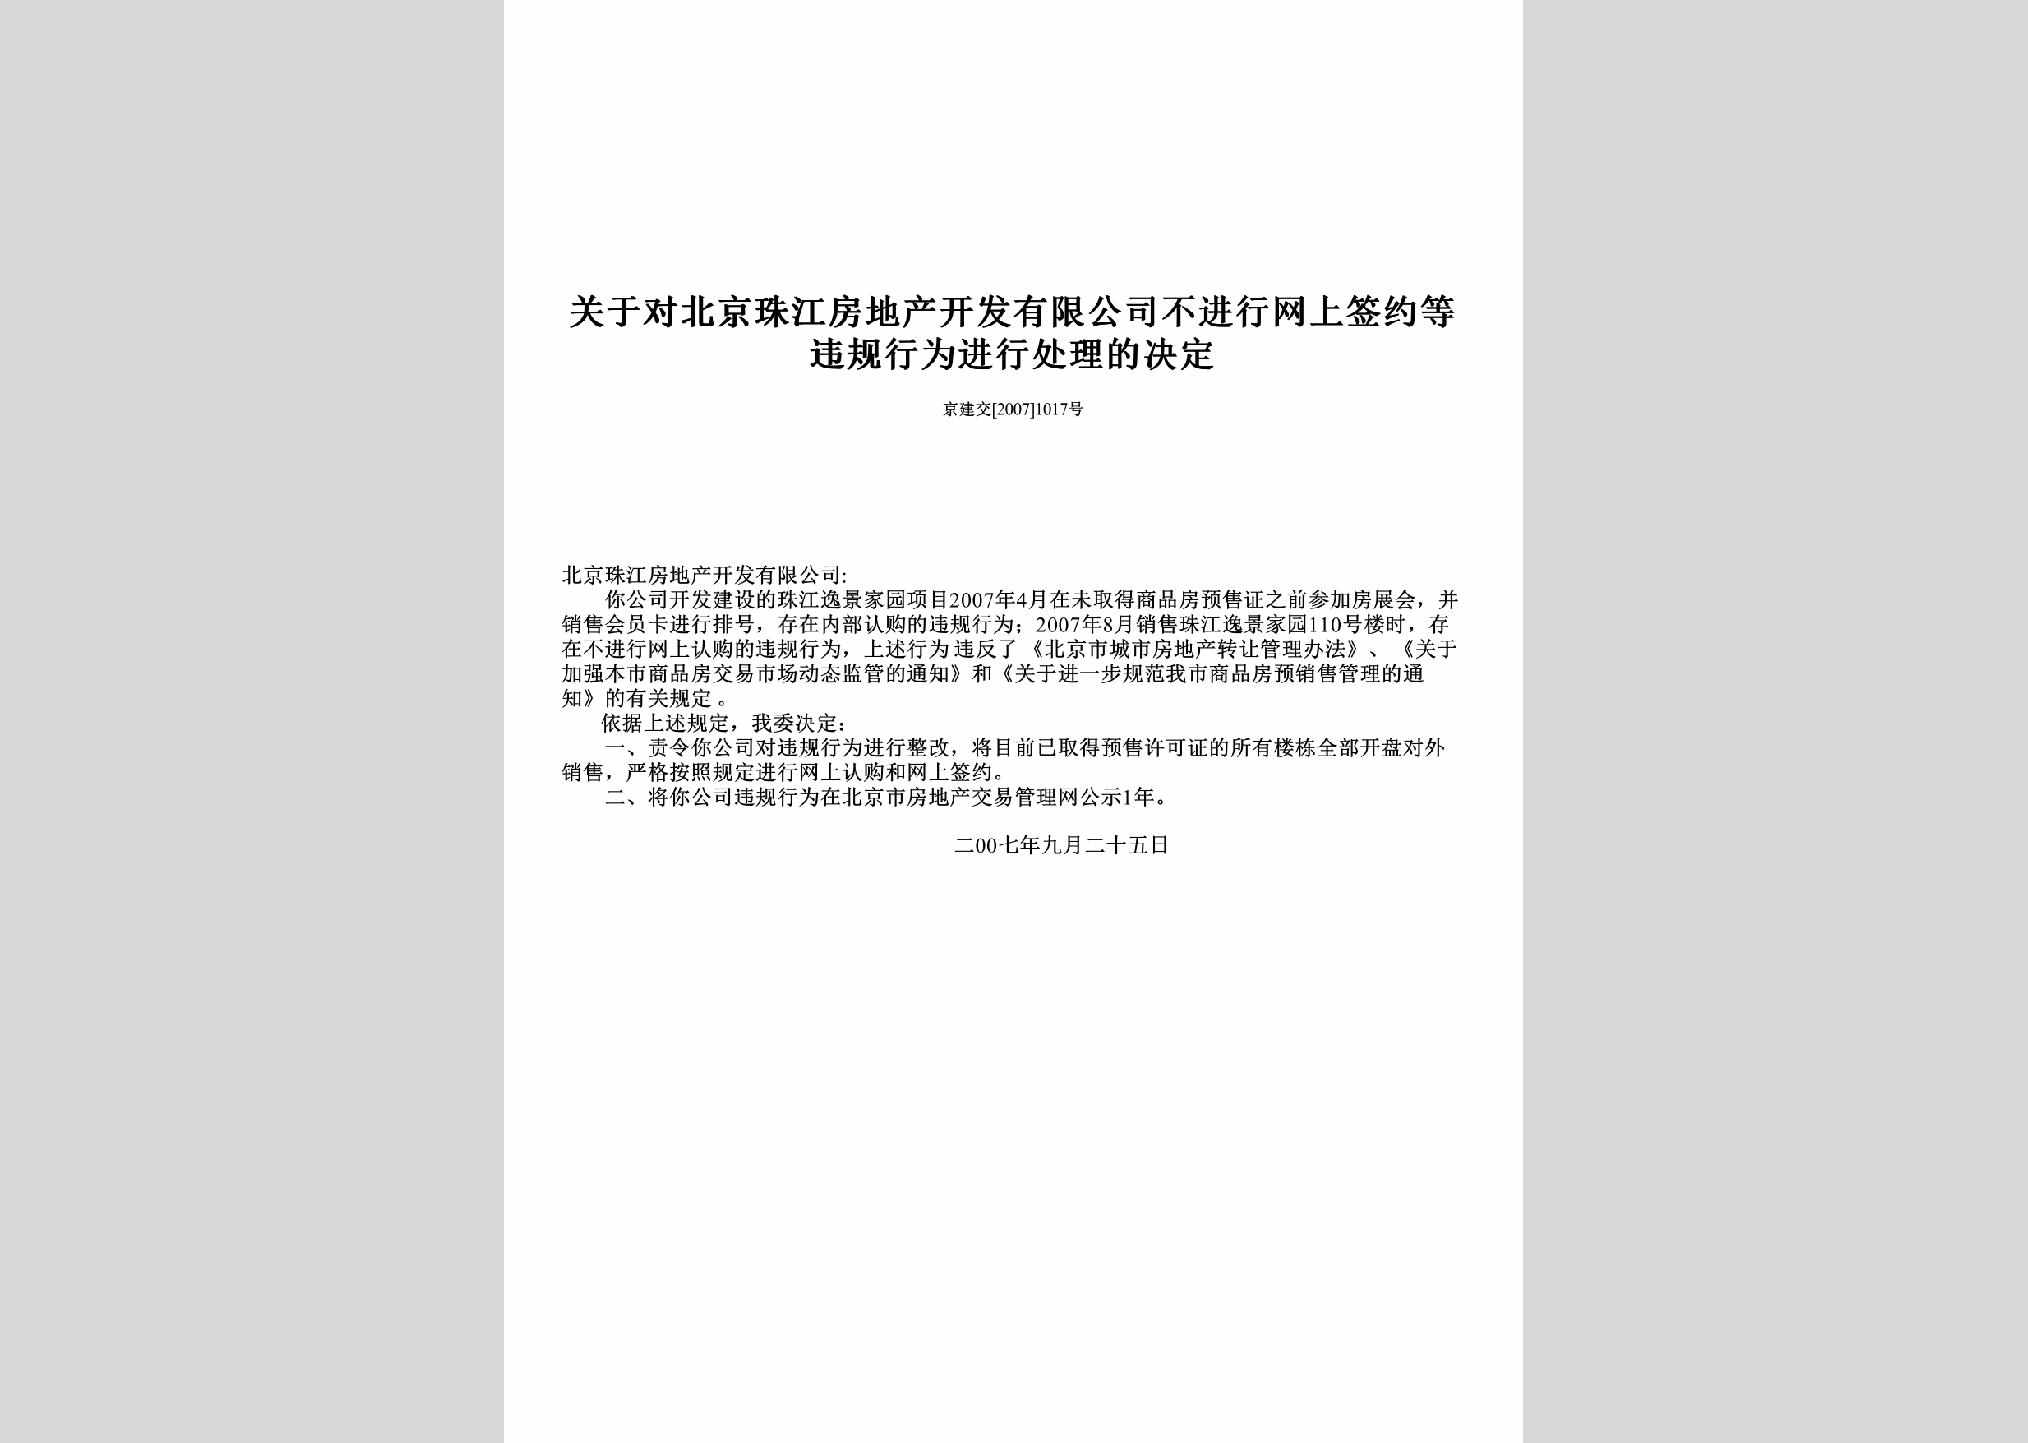 京建交[2007]1017号：关于对北京珠江房地产开发有限公司不进行网上签约等违规行为进行处理的决定